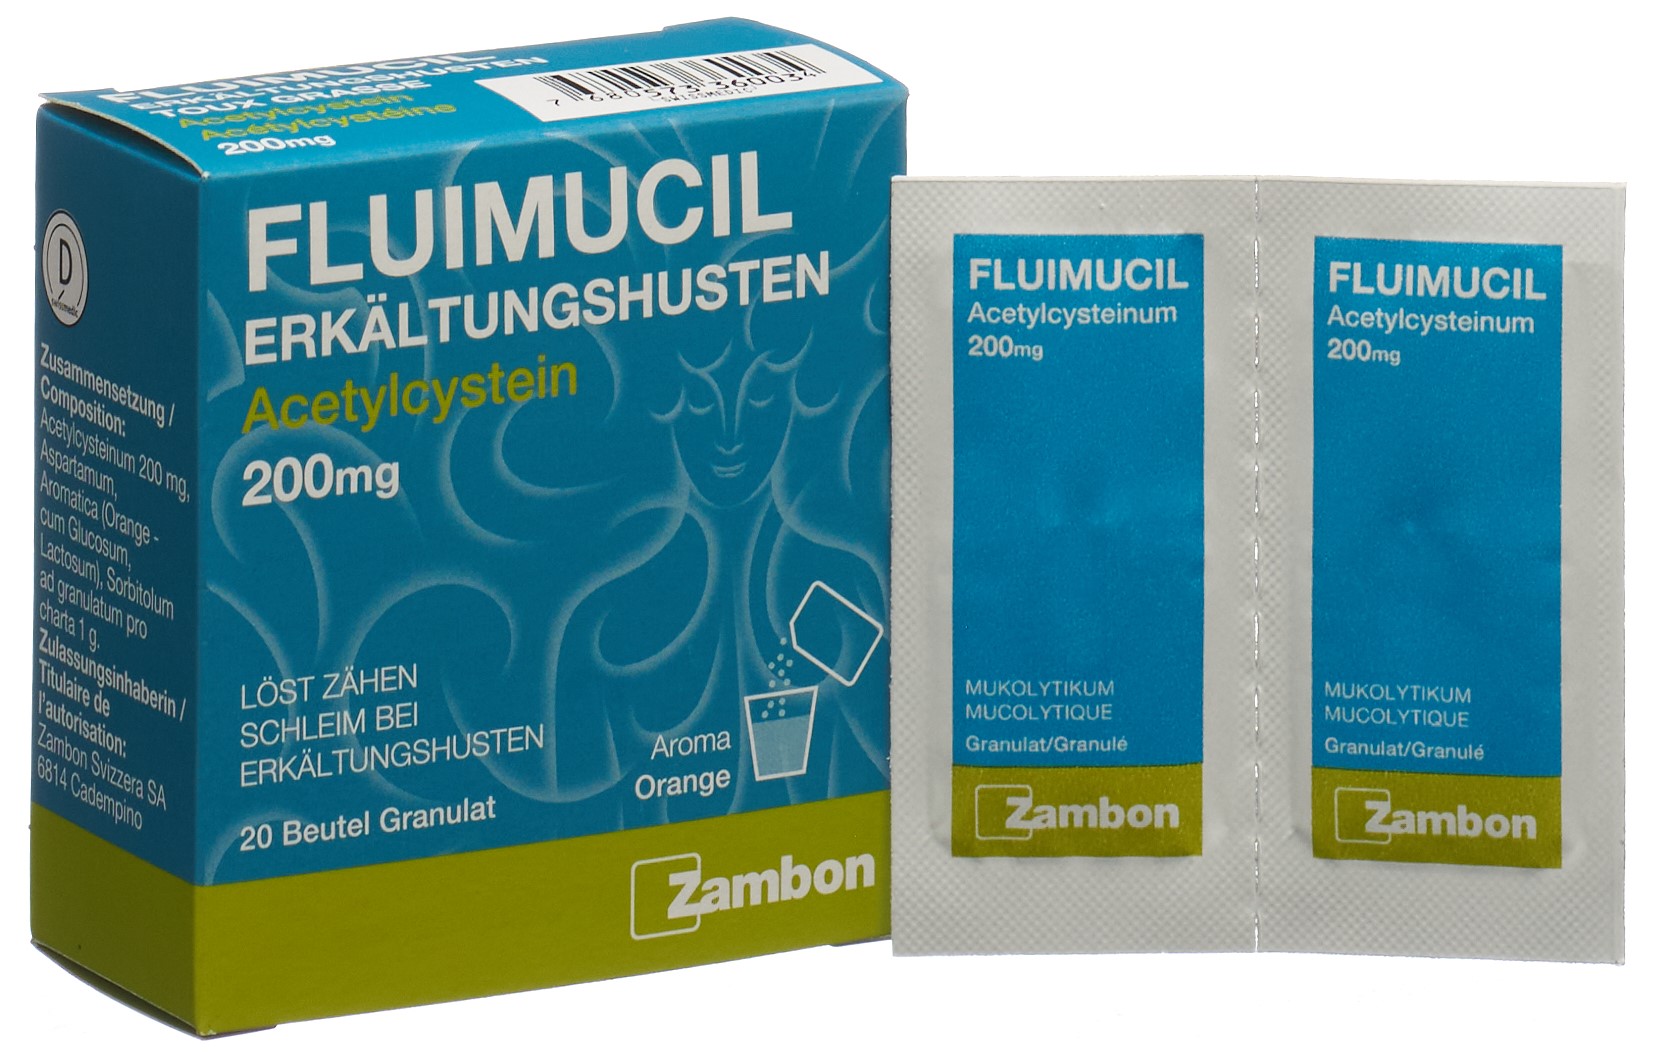 FLUIMUCIL Erkältungshusten Gran 200 mg 20 Stk